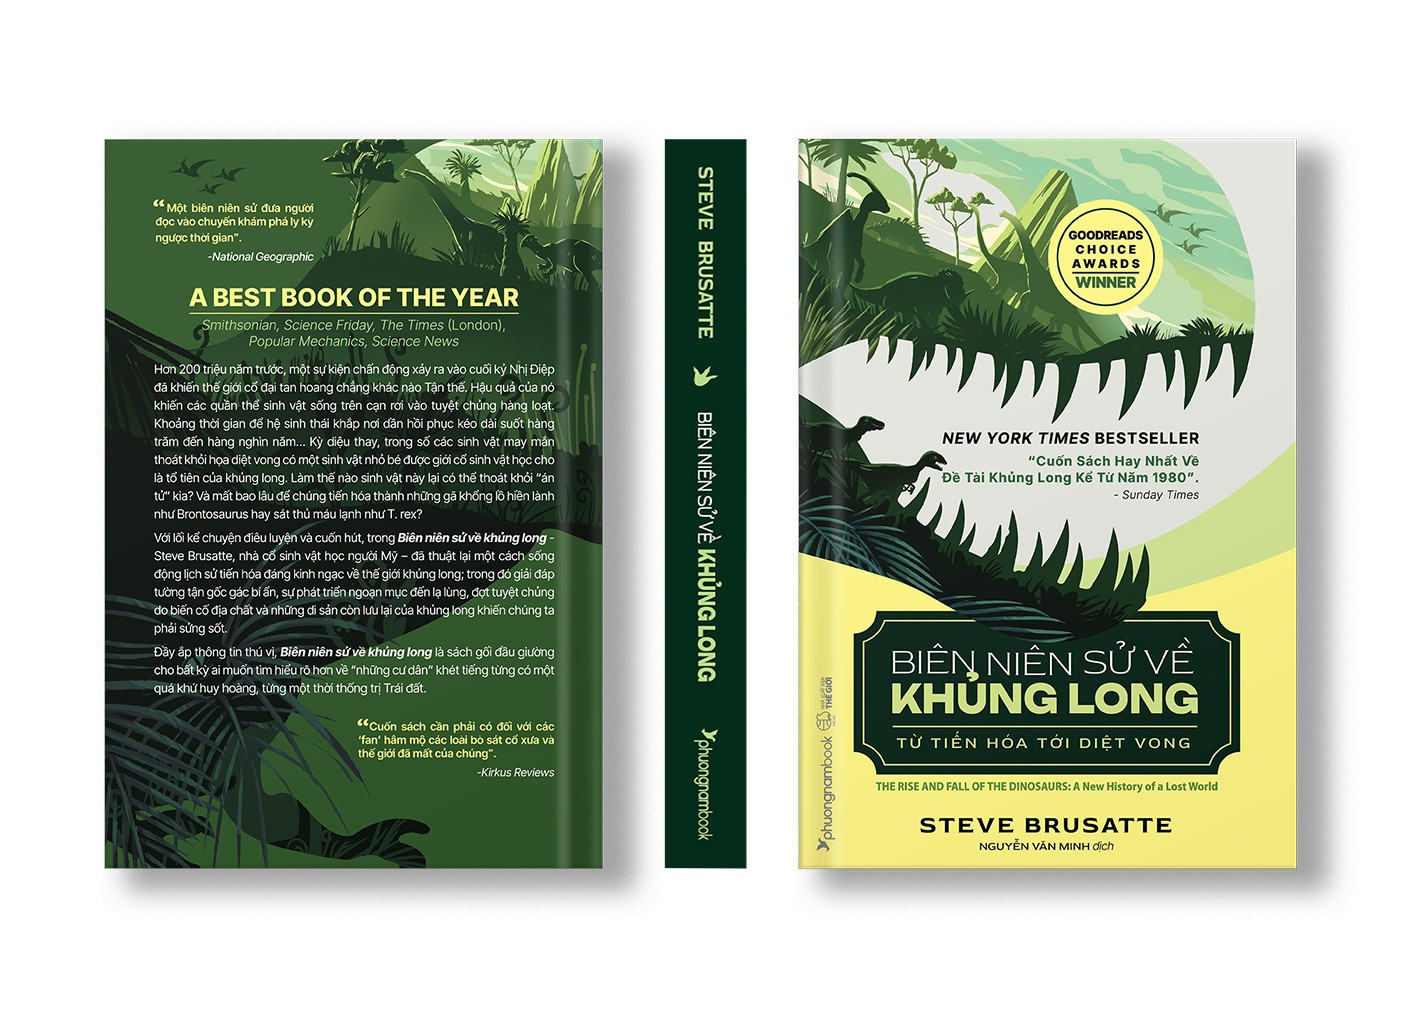 (New York Times Best Seller) BIÊN NIÊN SỬ VỀ KHỦNG LONG: Từ tiến hóa tới diệt vong - Steve Brusatte – Nguyễn Văn Minh dịch - Phương Nam Books 